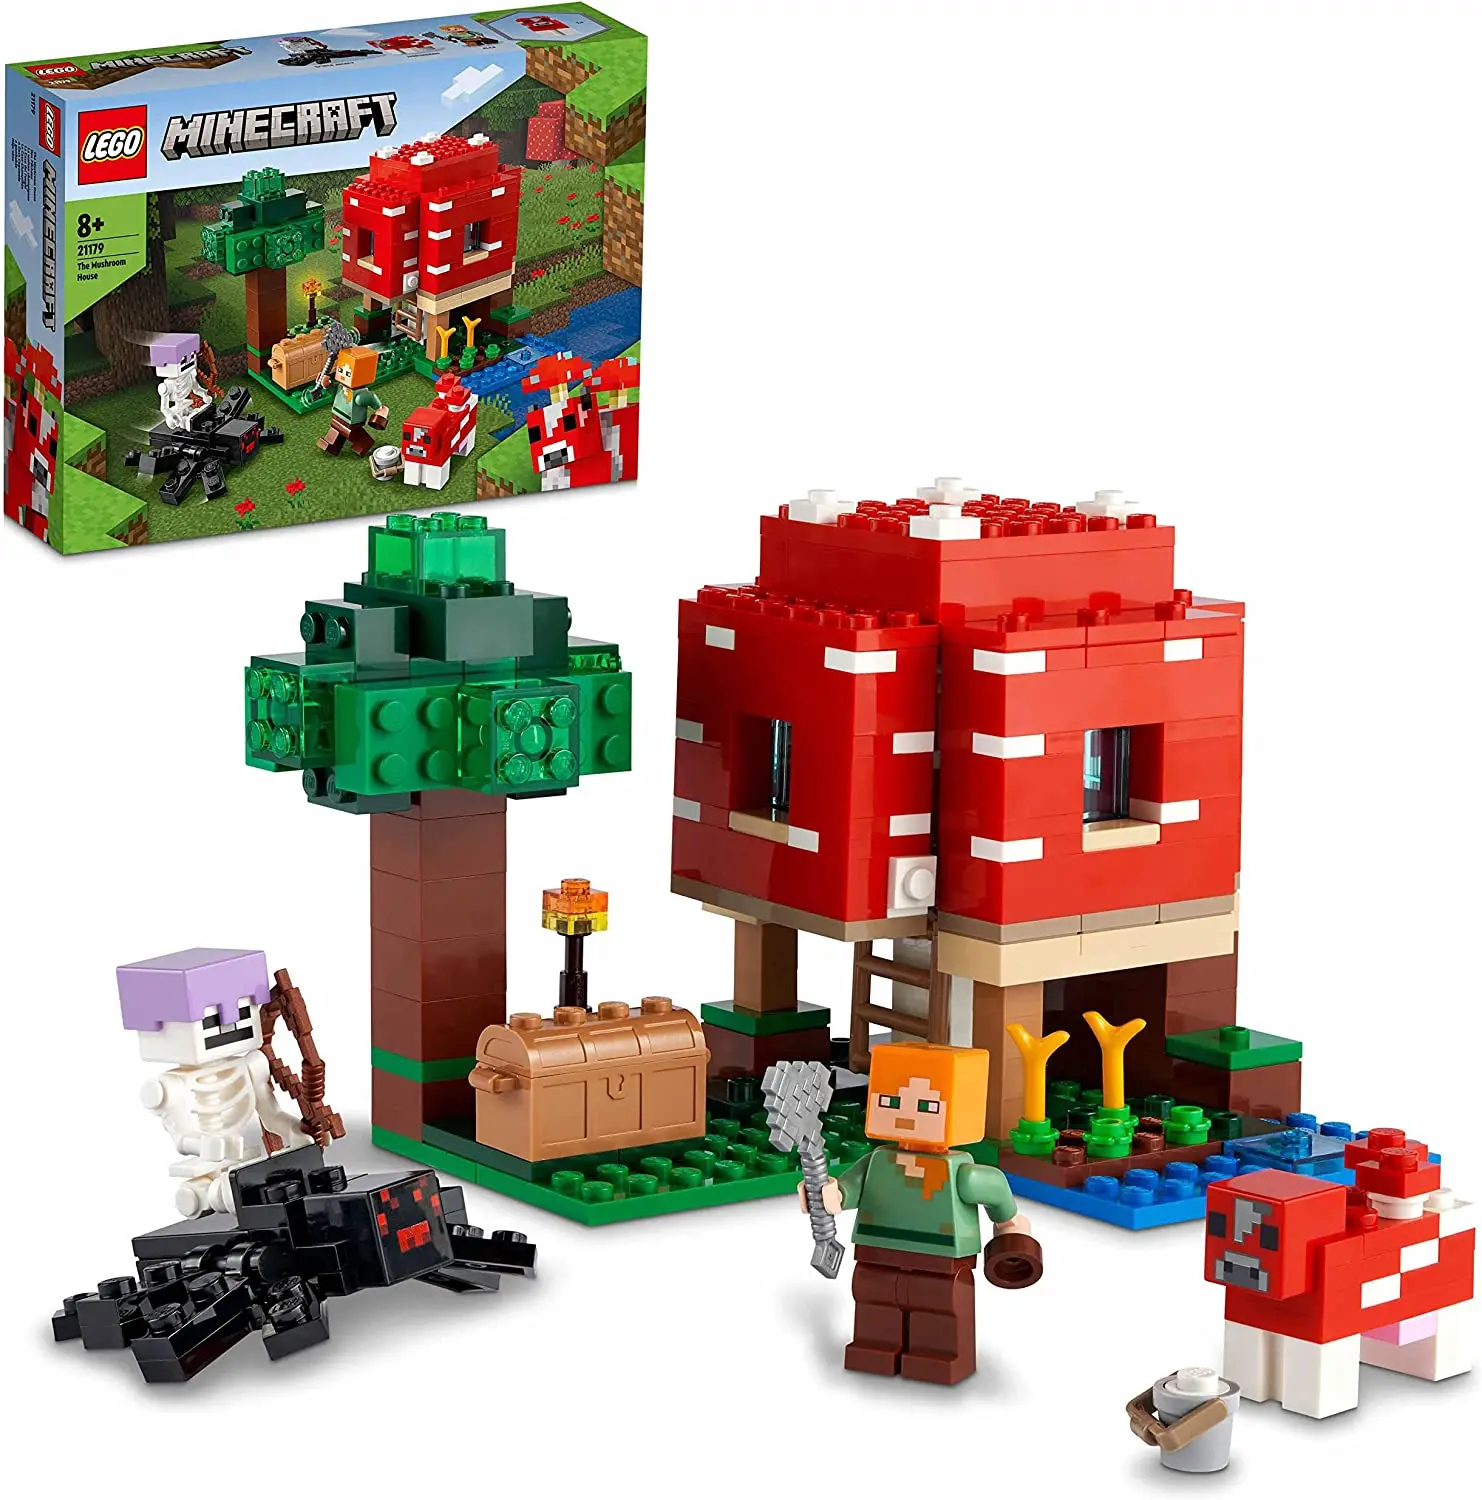 

Конструктор LEGO 21179 Minecraft грибковый дом, строительная игрушка для детей 8 лет плюс, Подарочная идея с Алексом, Mooshroom & Spider Jockey